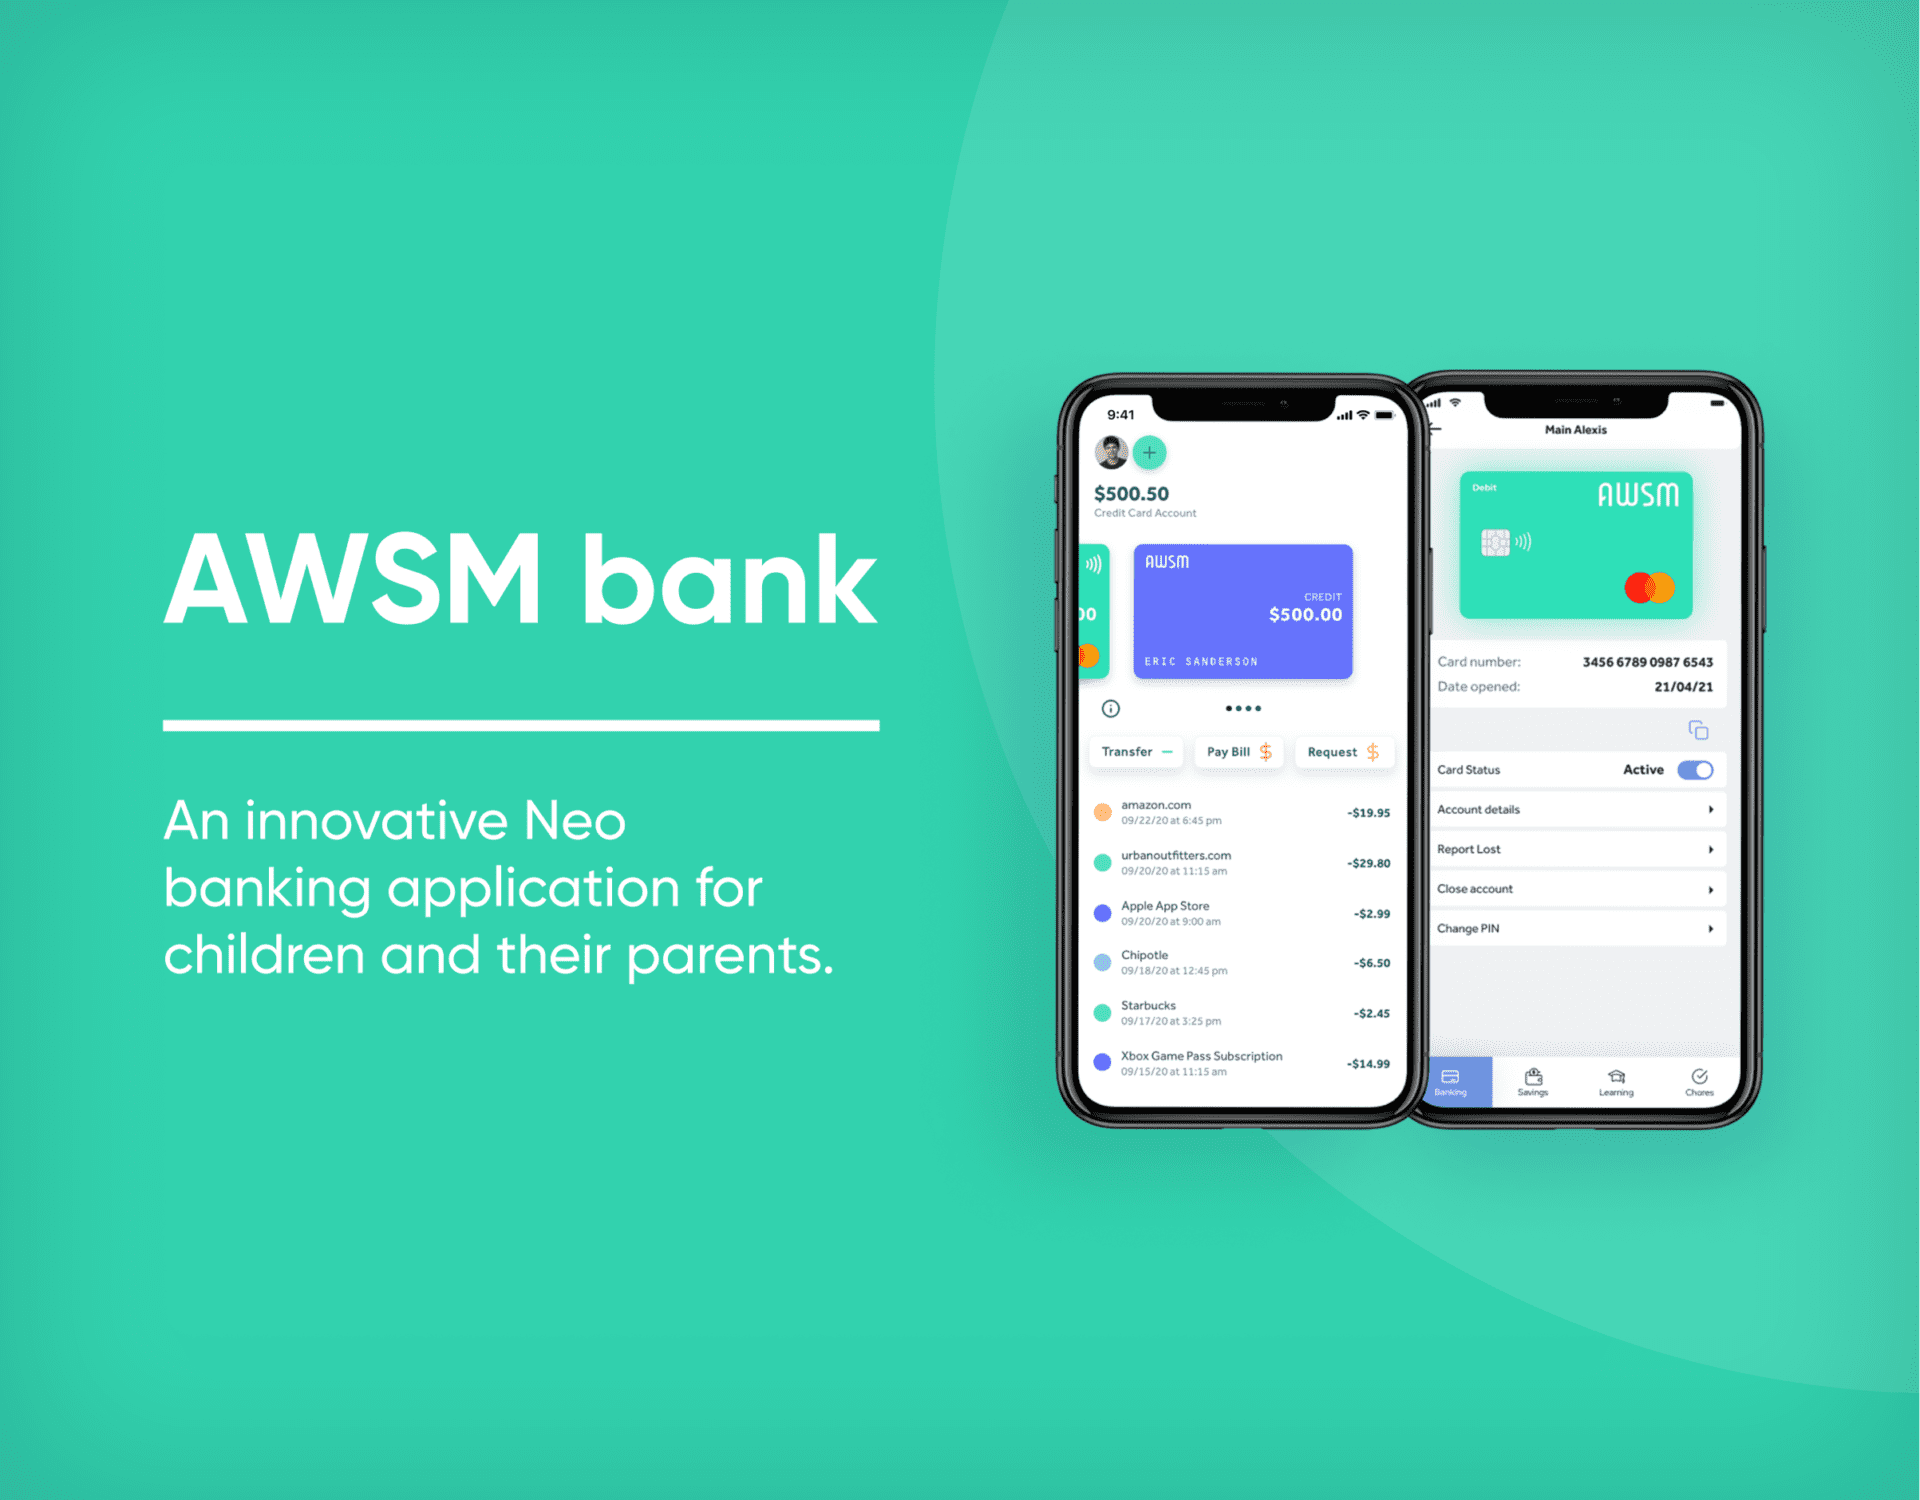 AWSM bank